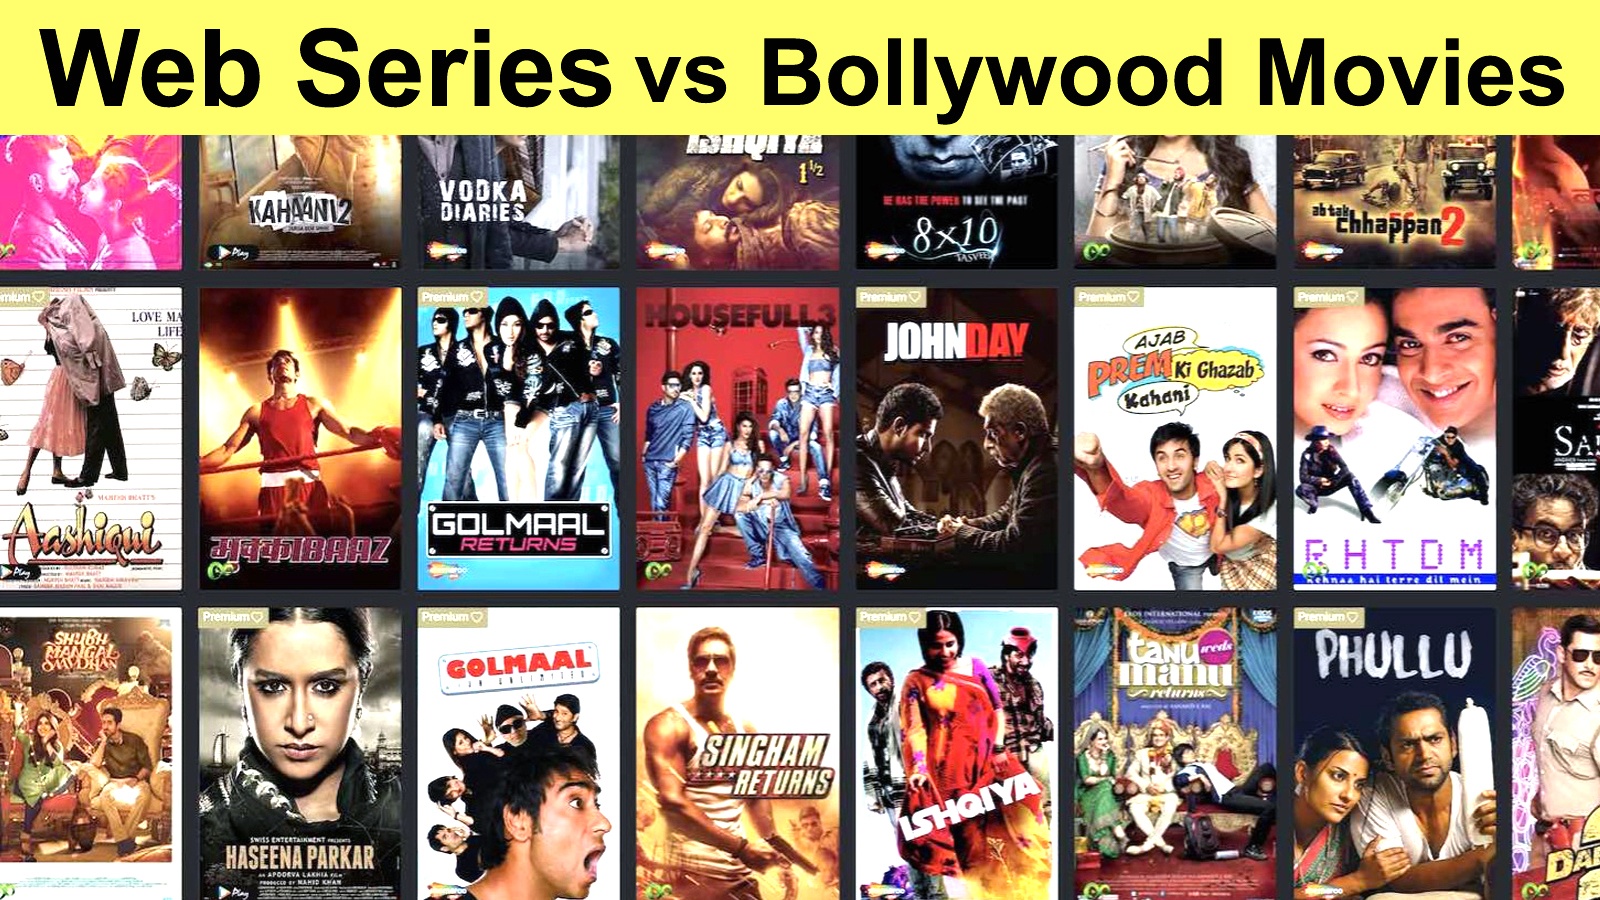 web series बॉलीवुड फिल्मों के मुकाबले लोगों के बीच पैठ बना रही हैं।